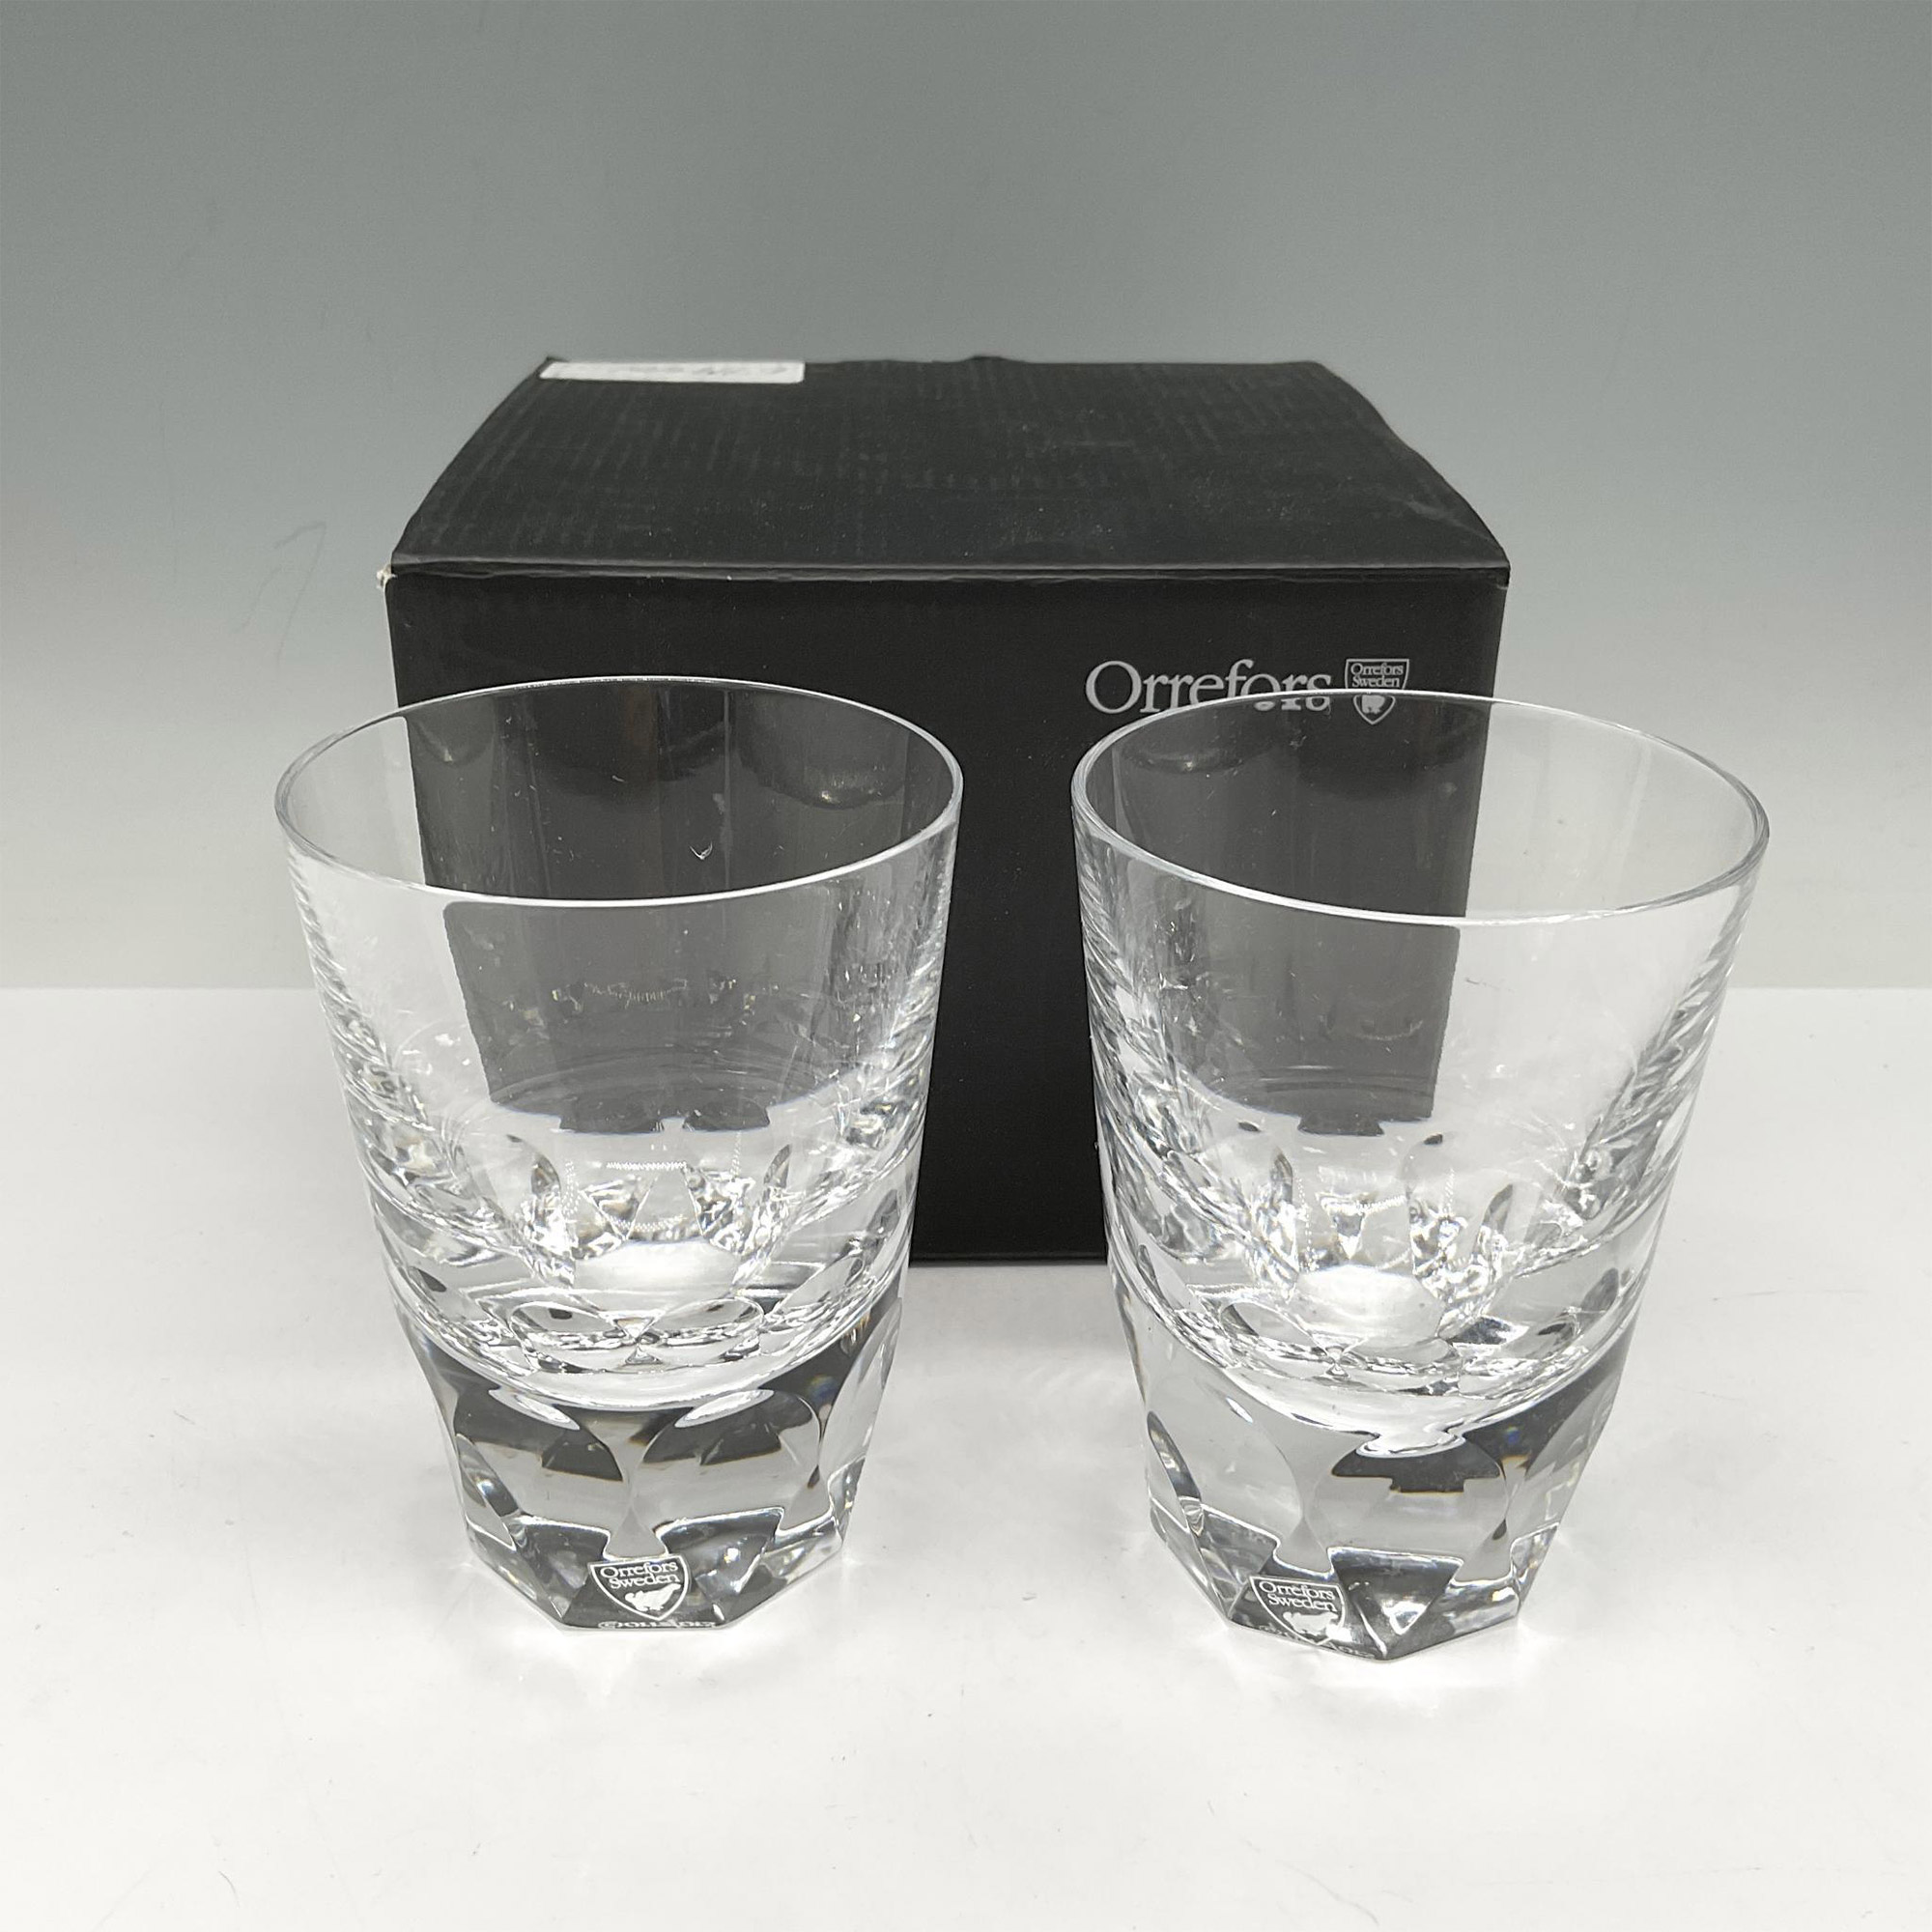 Orrefors Crystal Drink Glasses, Set of 2 - Image 4 of 4